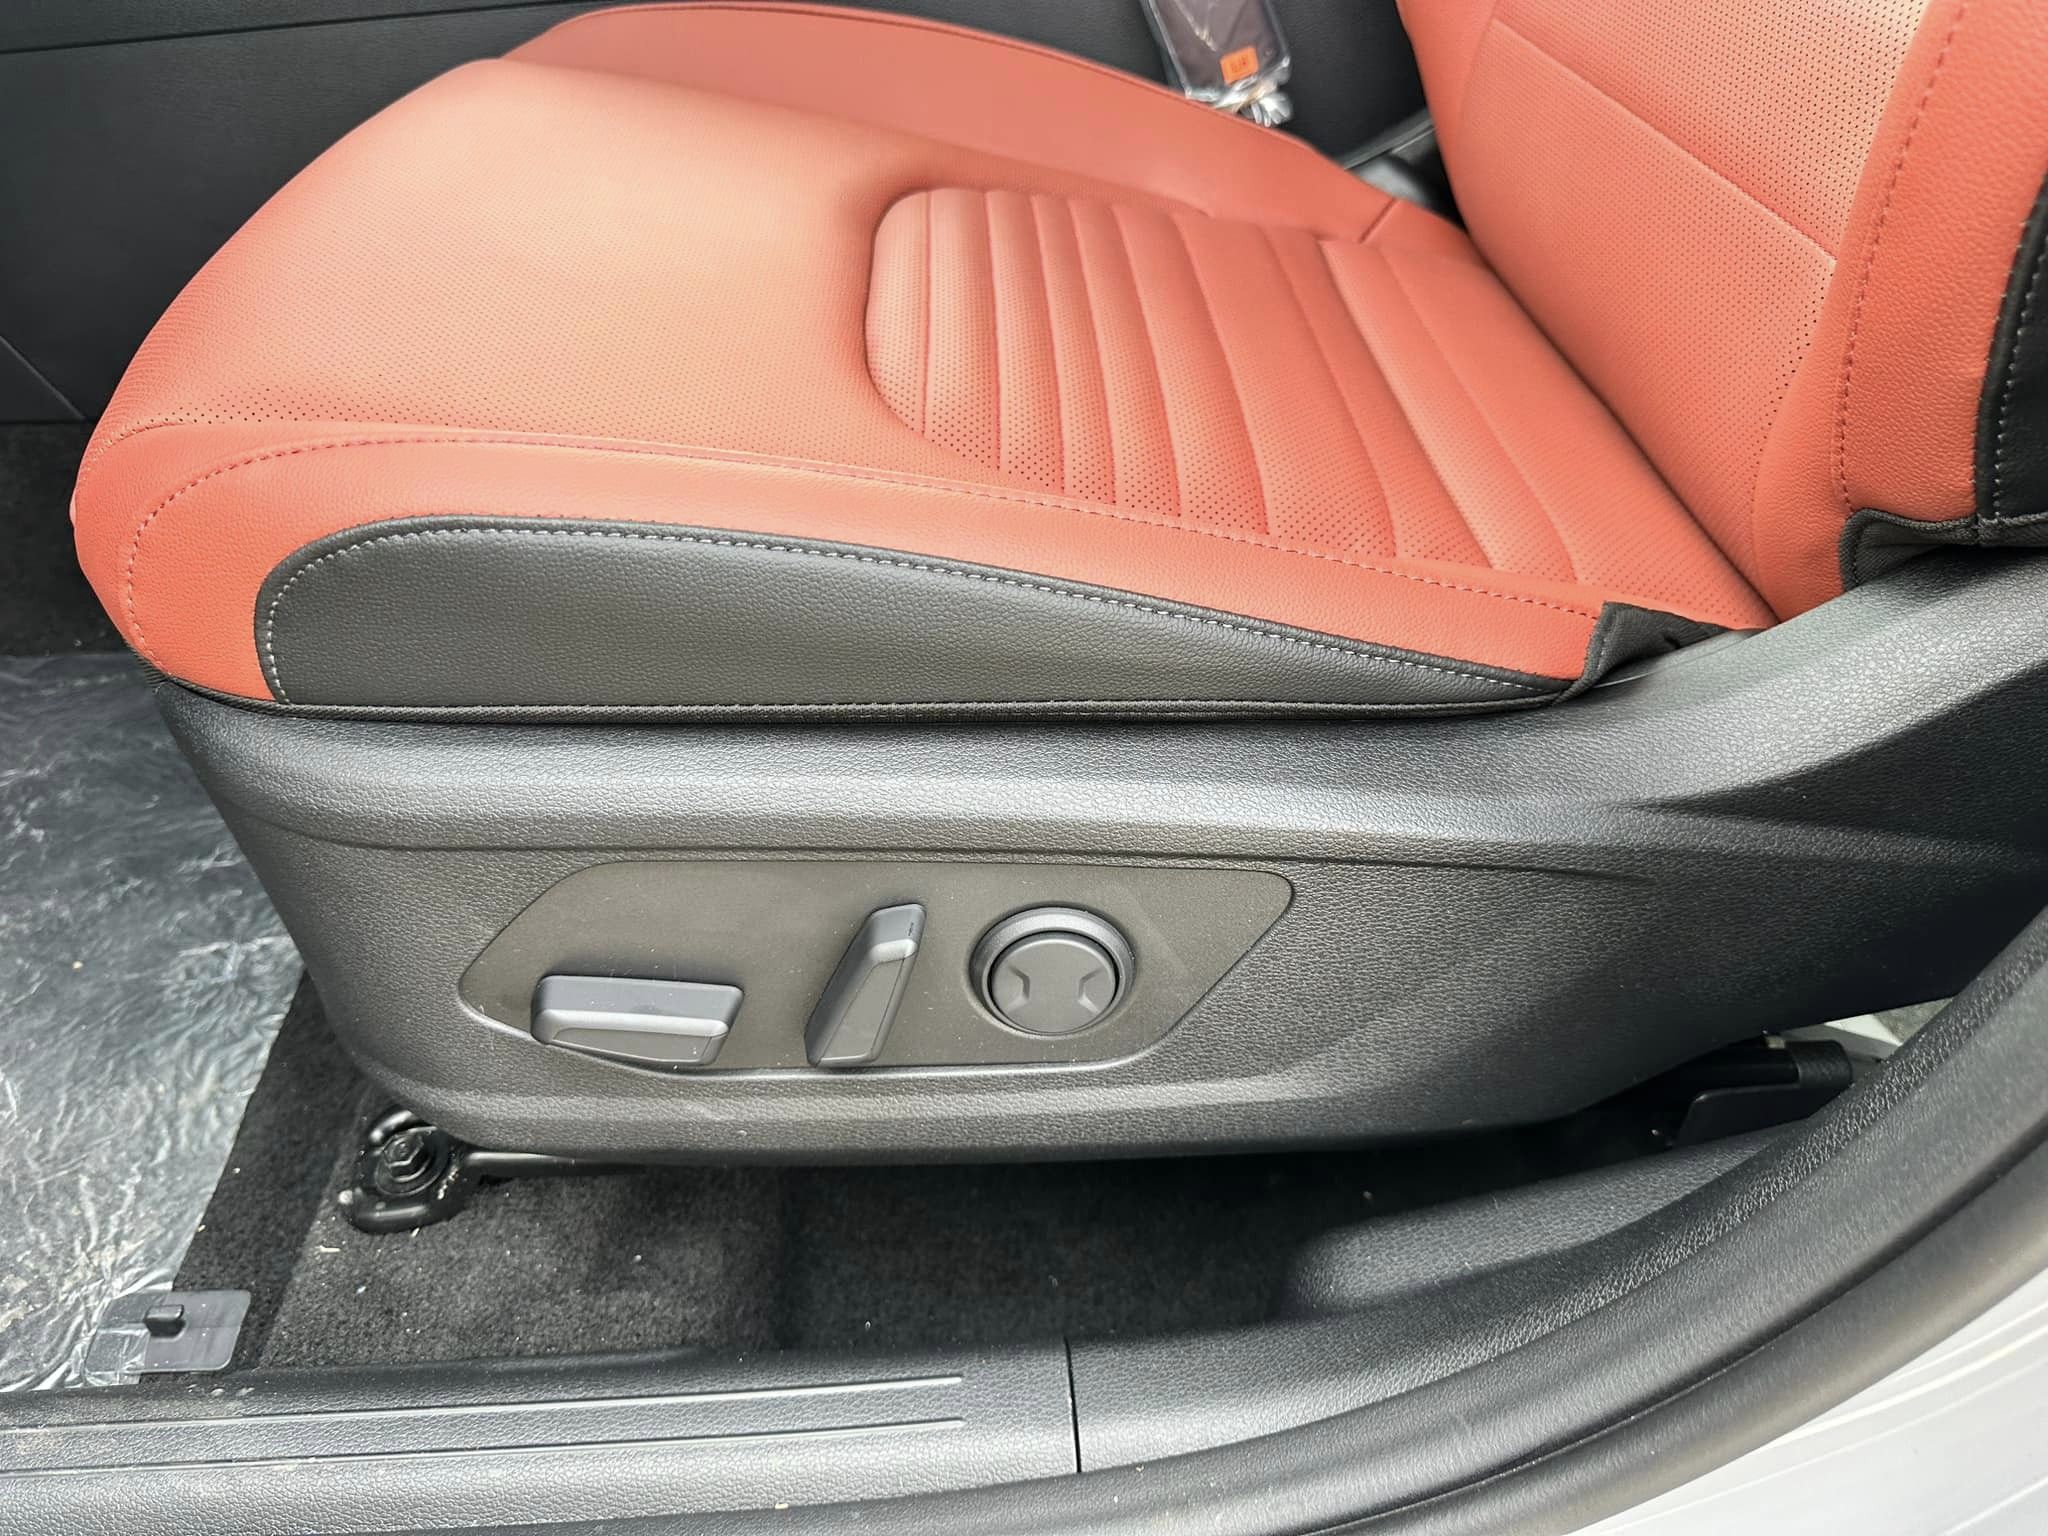 2024 Kia Sportage - Wolf Gray/Carmine Red Interior - SX Prestige Trim - Driver Seat Controls